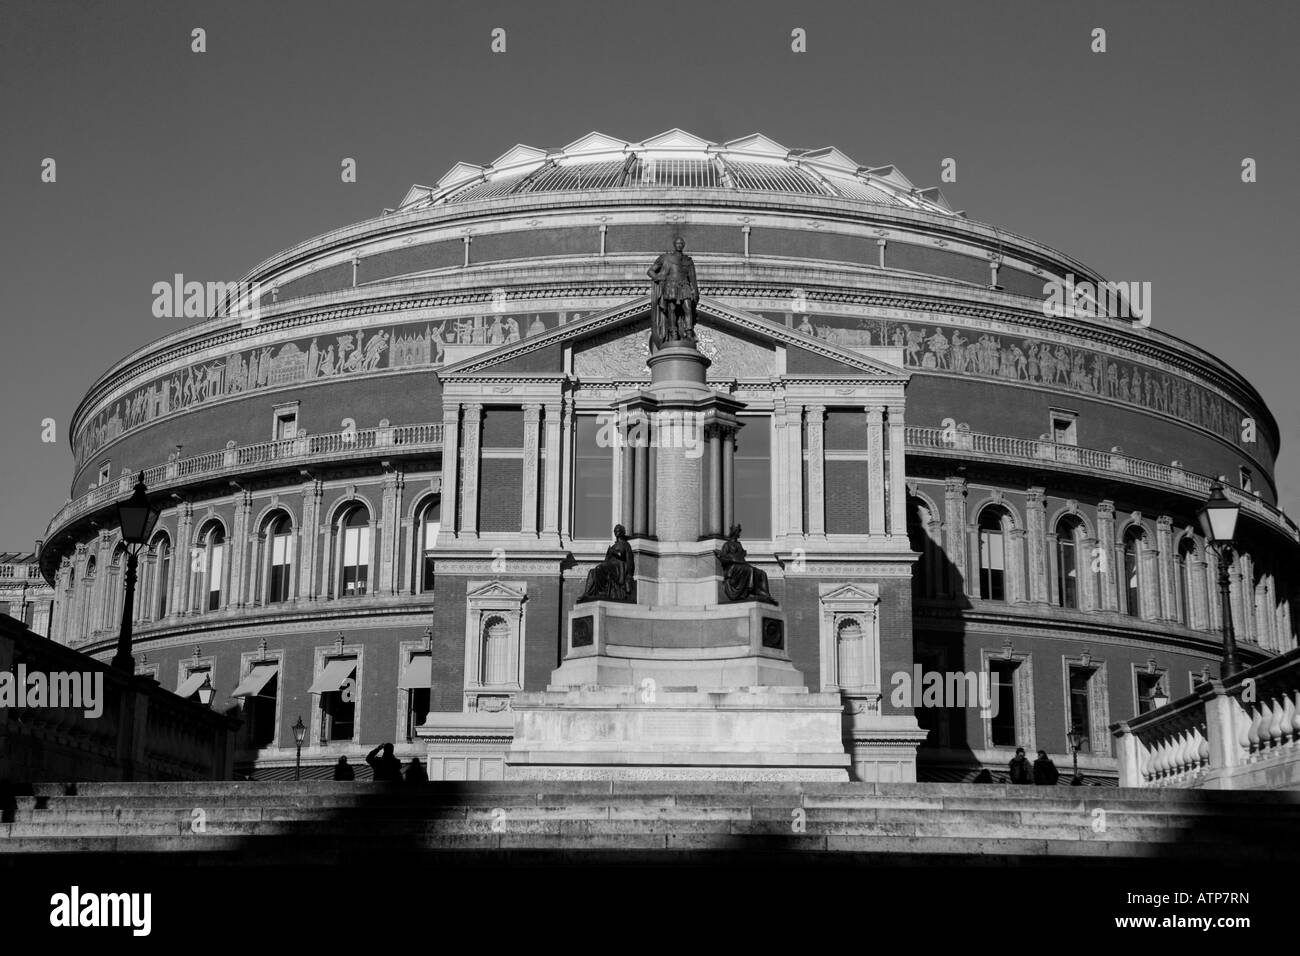 Le Royal Albert Hall, South Kensington, London, UK Banque D'Images